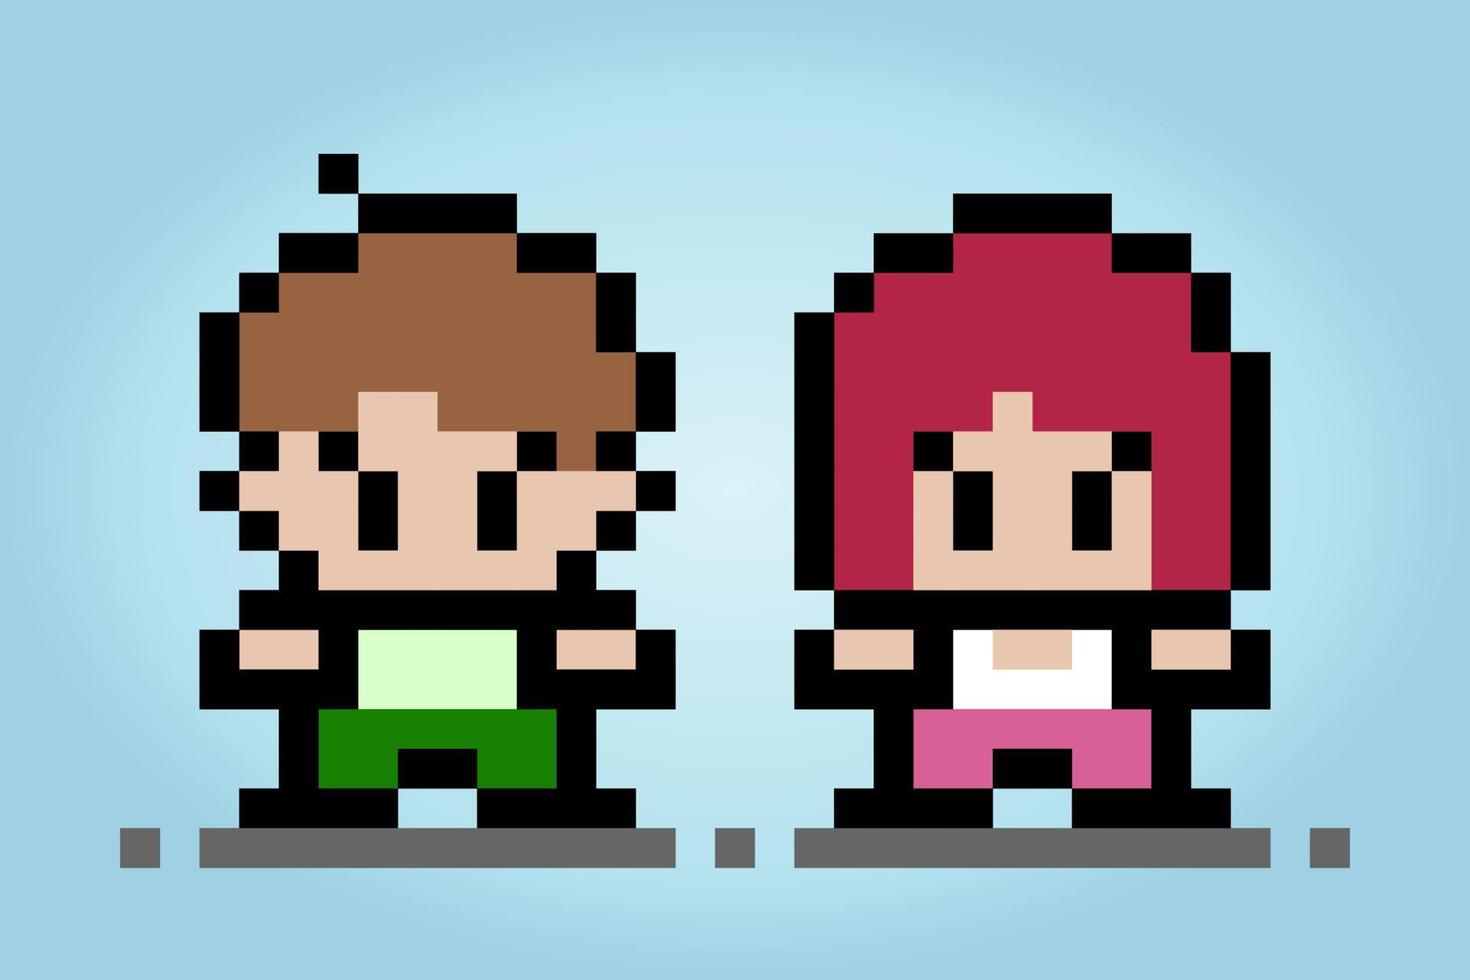 Parejas humanas de píxeles de 8 bits. pareja masculina y femenina para activos de juego y patrones de punto cruzado en ilustraciones vectoriales. vector